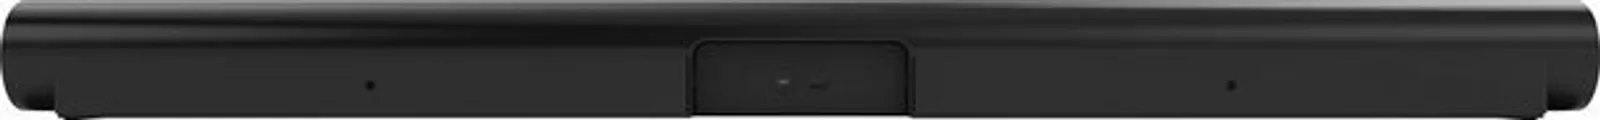 Sonos Arc Premium Soundbar (LAN (Ethernet), WLAN, für TV, Filme und Musik)